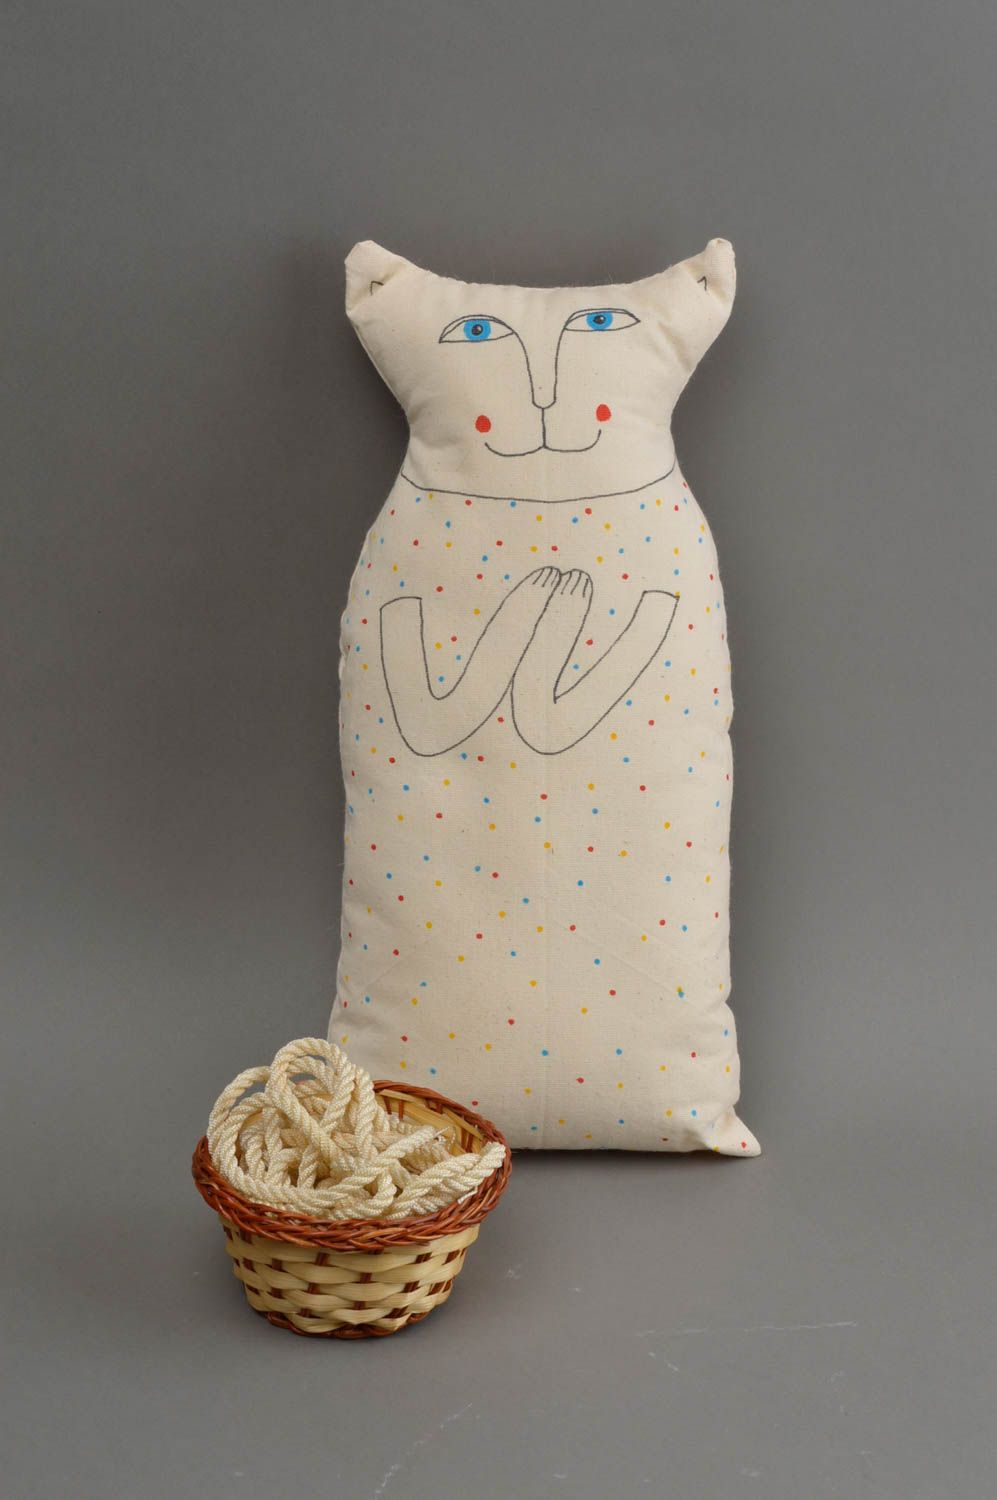 Хлопчатобумажная подушка в виде кота расписная белая красивая хэнд мэйд фото 1